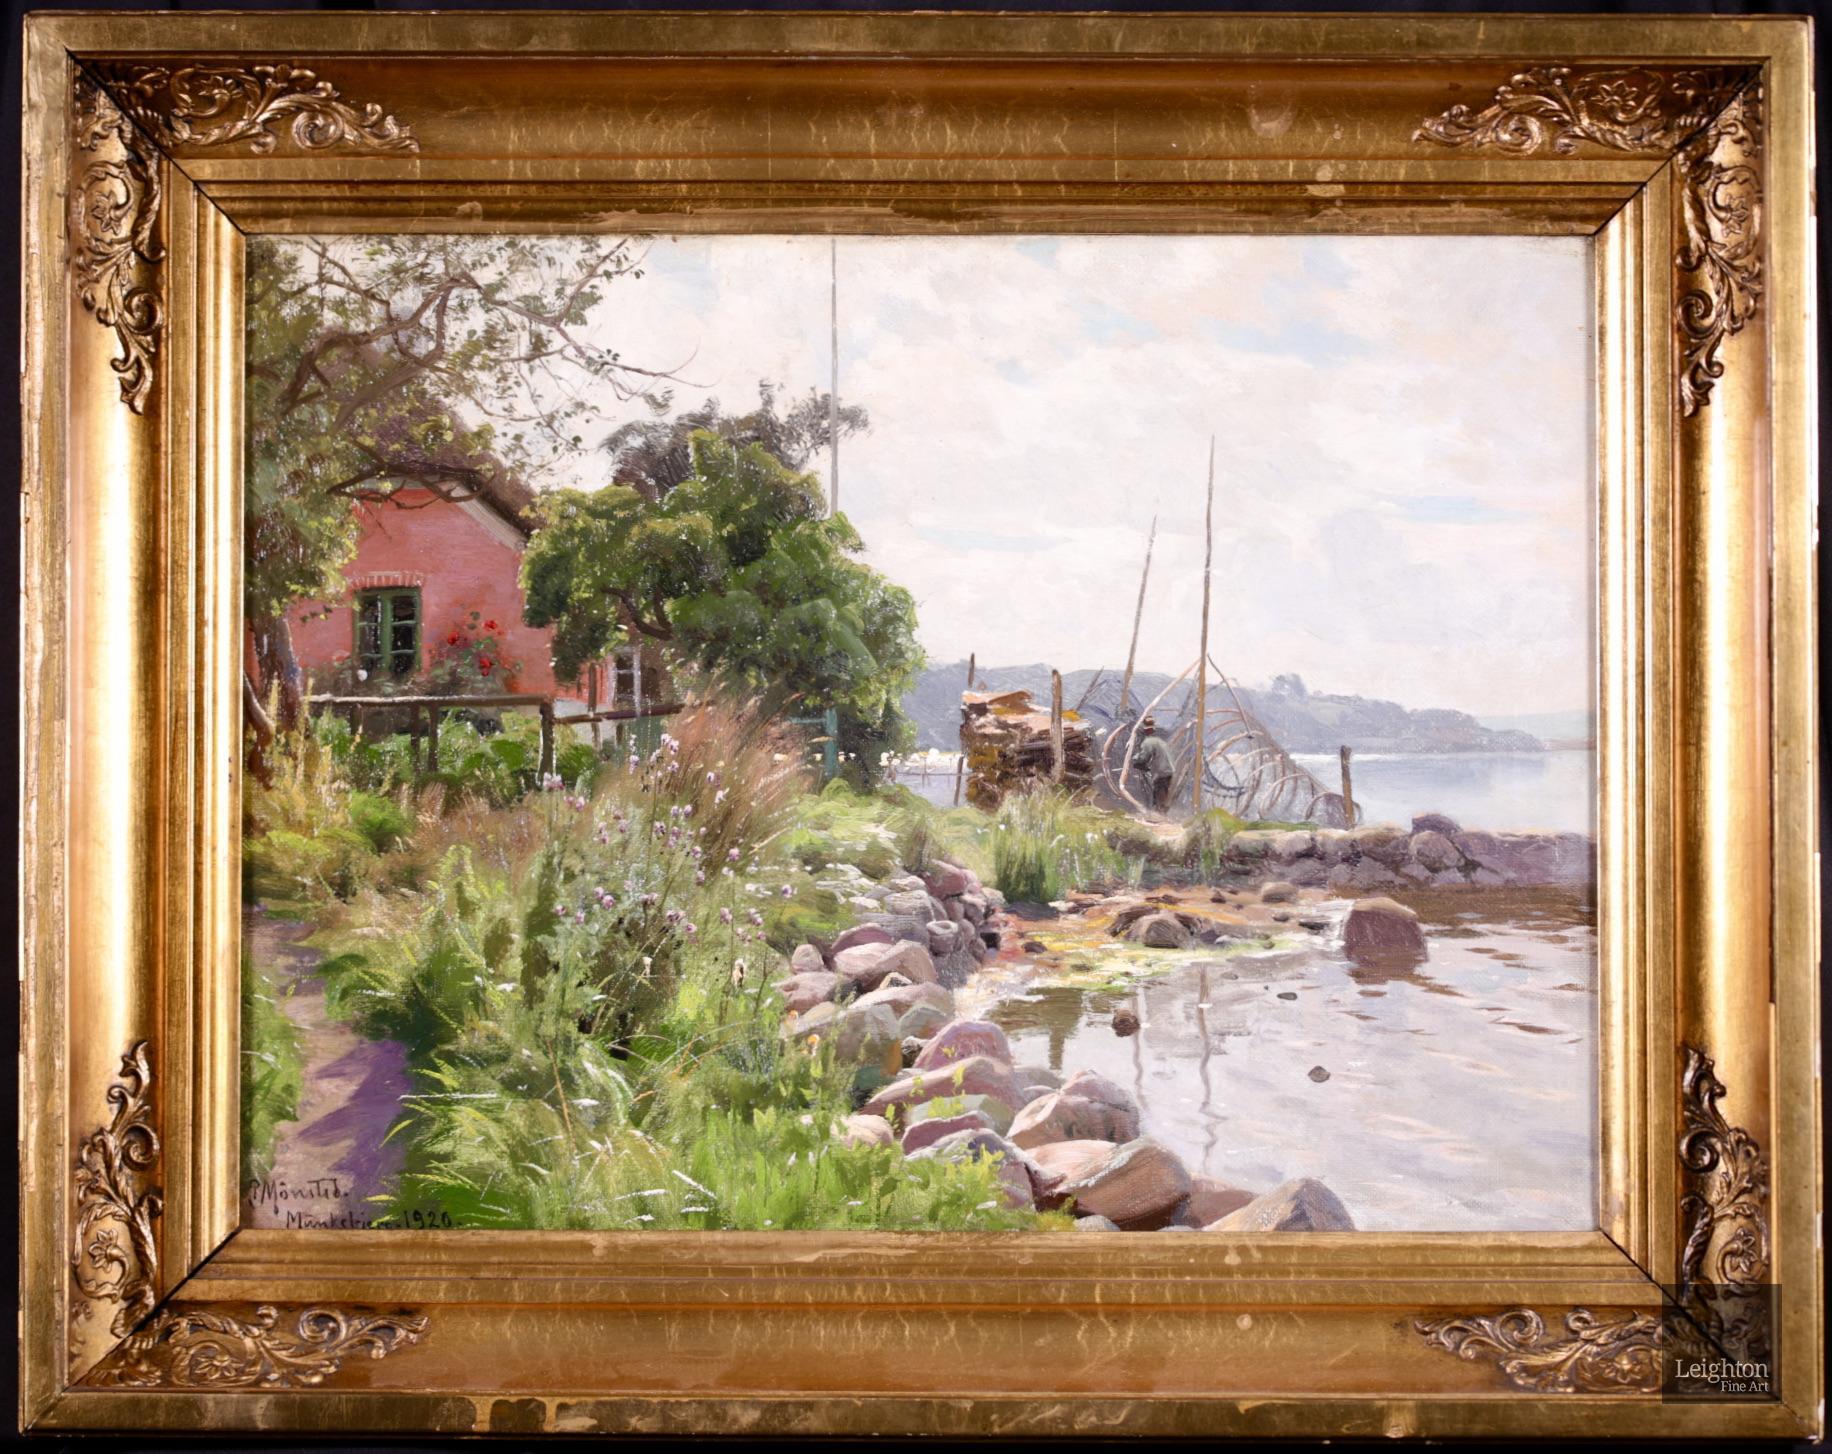 Landscape Painting Peder Mørk Mønsted - La pêche au Vejle Fjord - huile réaliste, paysage fluvial de Peder Monk Monsted